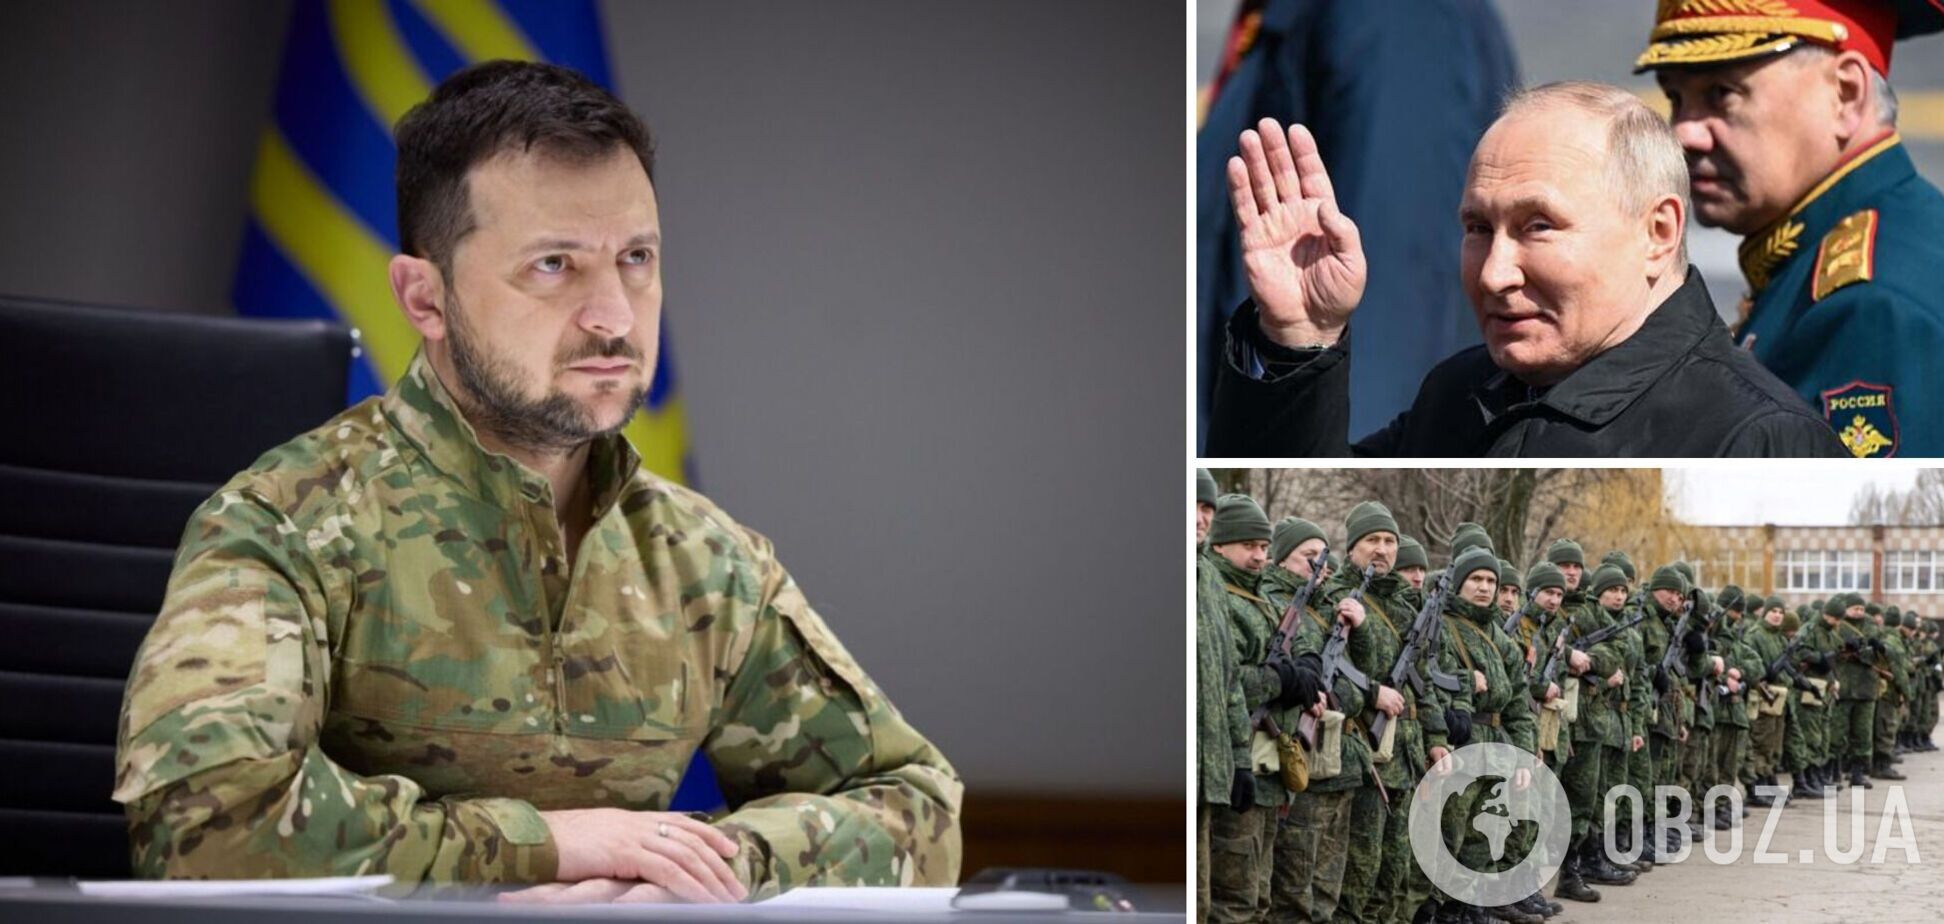 Путін хоче втопити Україну в крові російських солдатів, – Зеленський в інтерв’ю Bild   